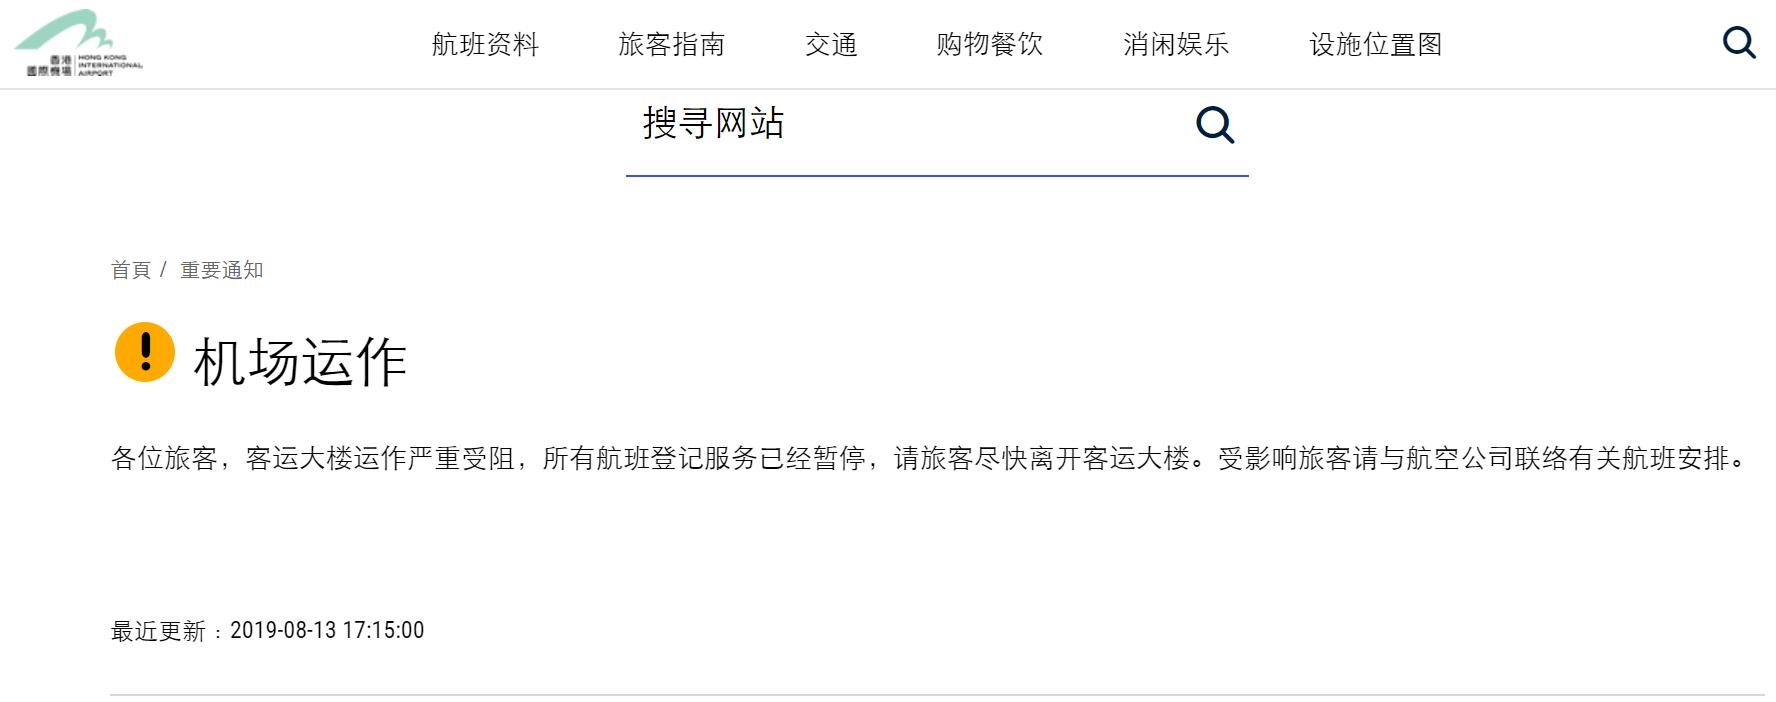 香港机场暂停13日17点之后所有航班登记